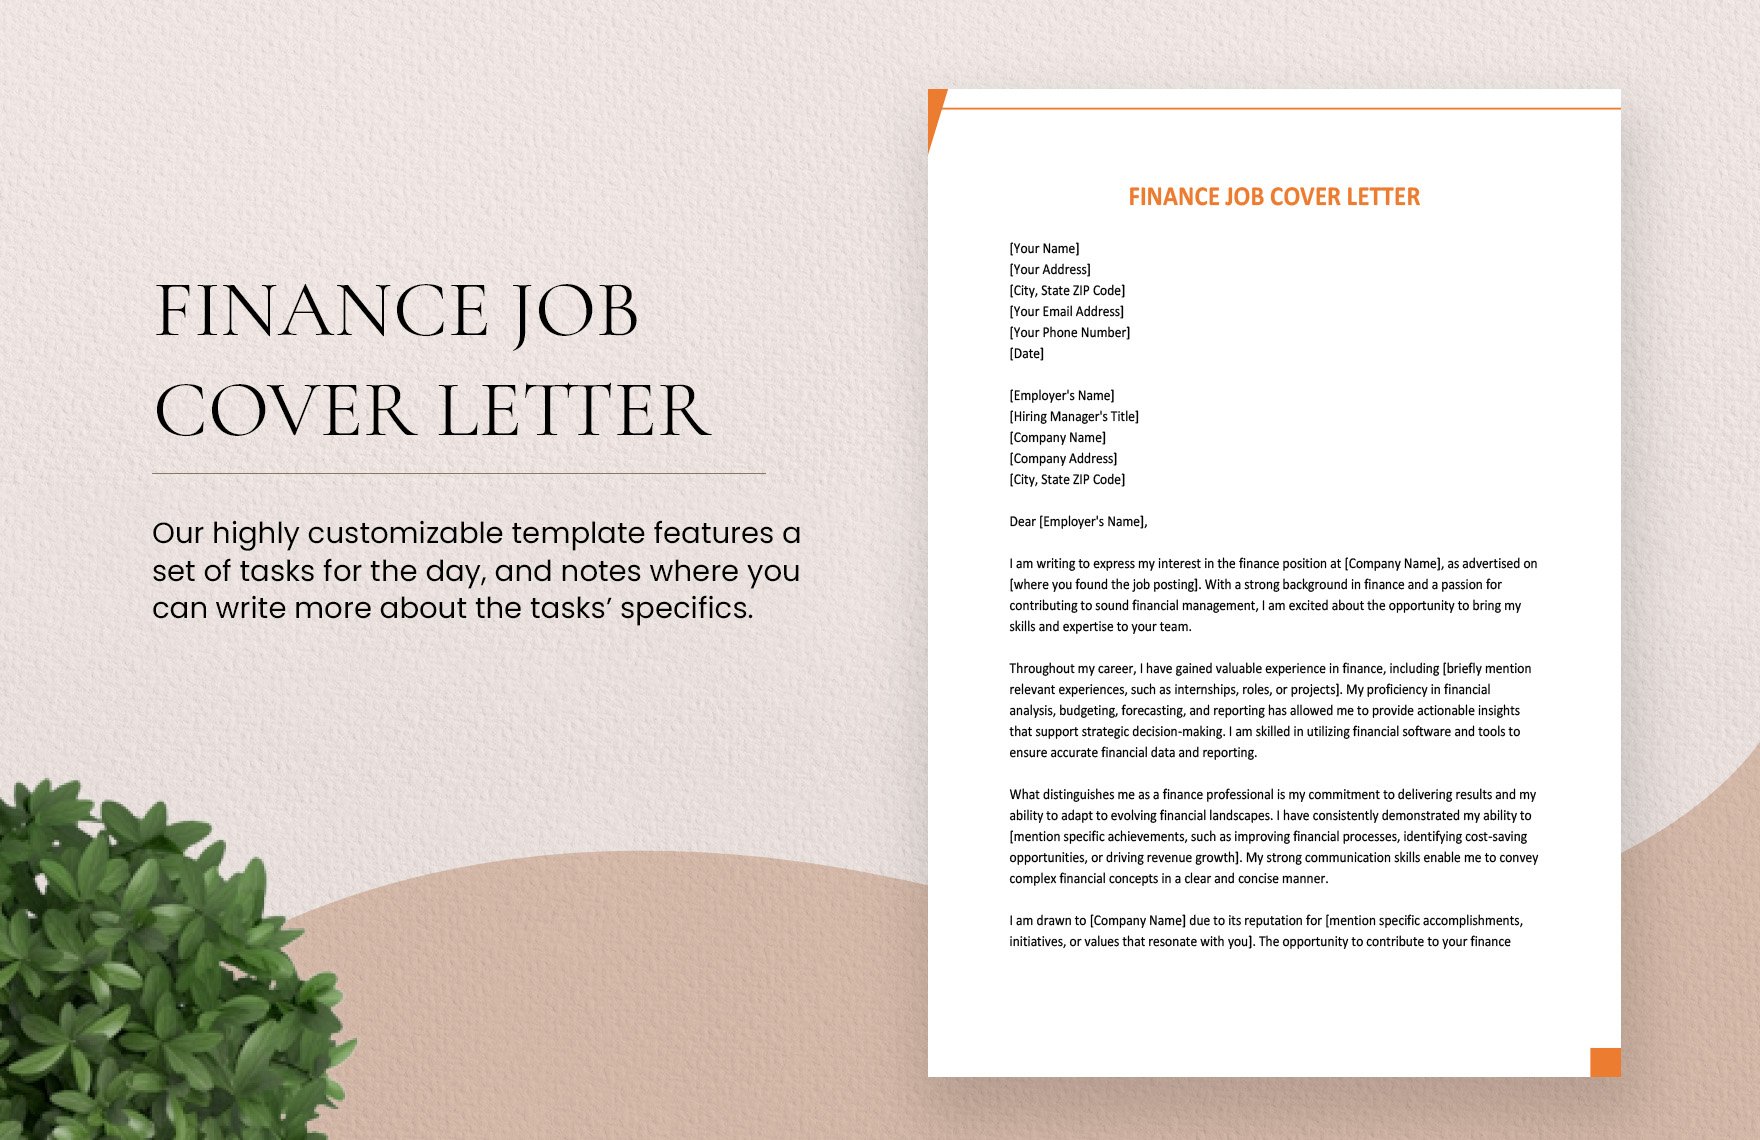 Finance Job Cover Letter